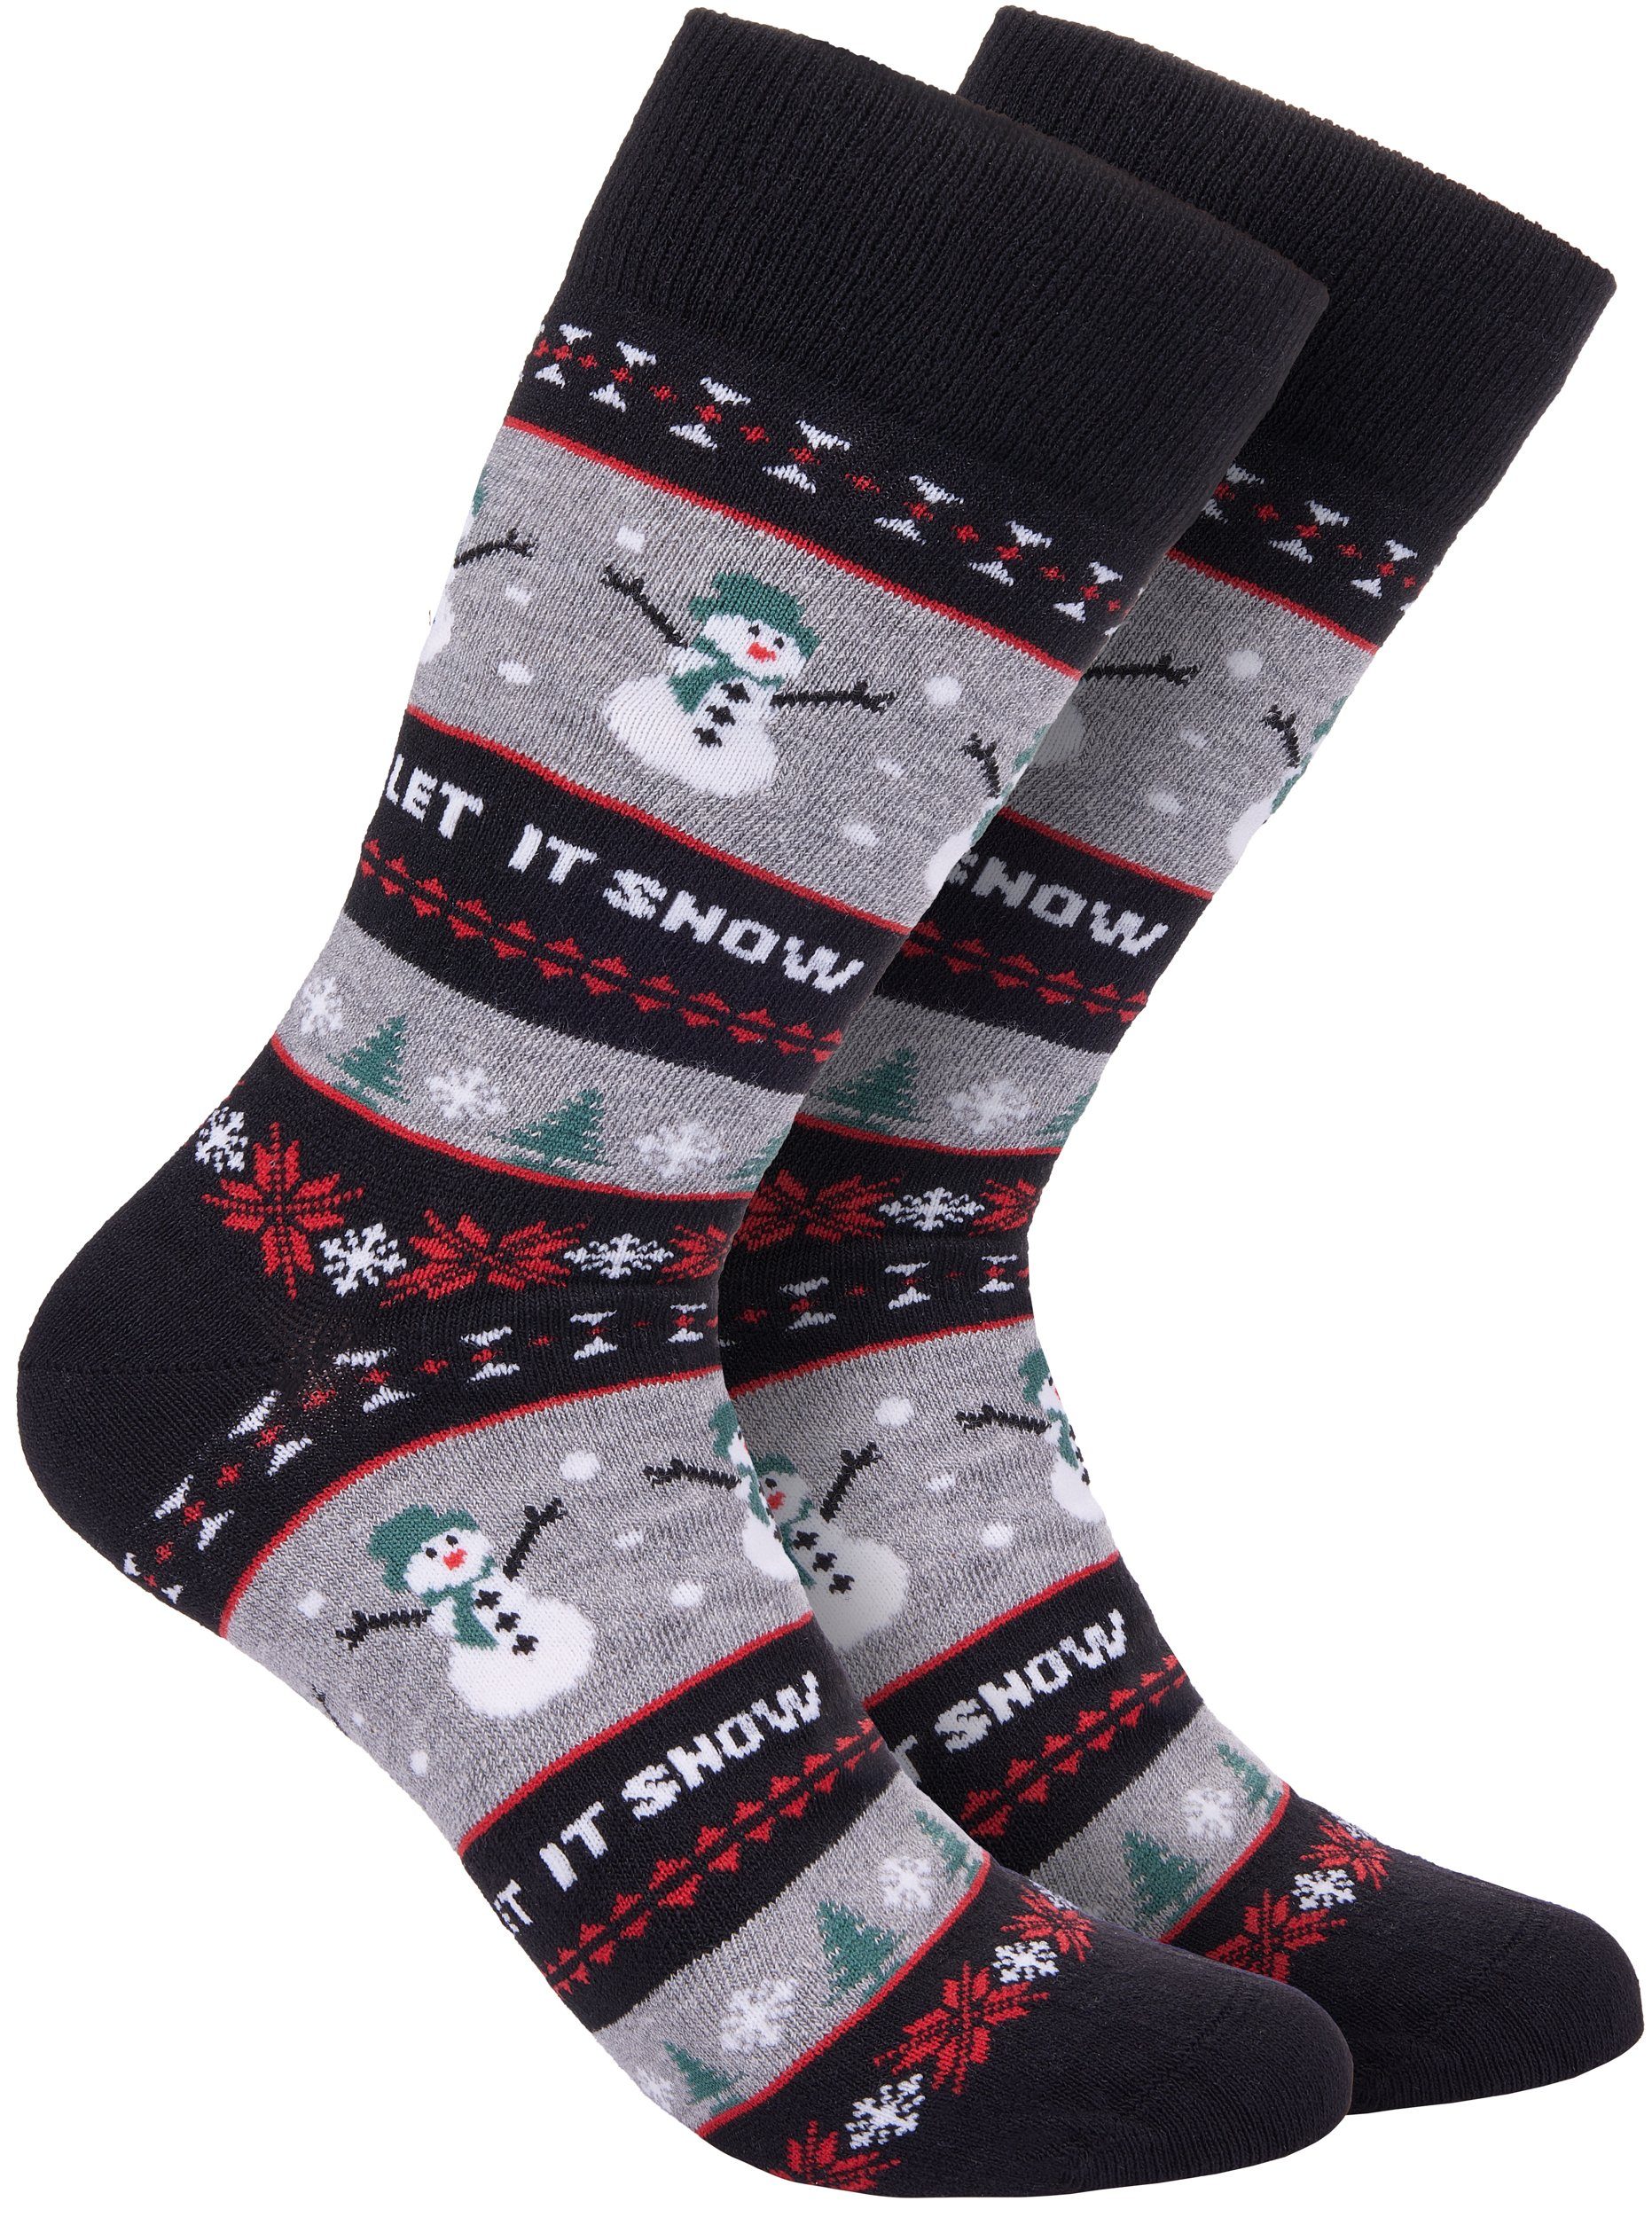 BRUBAKER Socken Weihnachtssocken für Damen und Herren (1-Paar, 1 Paar) Festliche Weihnachtsmotive - Baumwolle Socken Weihnachten | Wintersocken